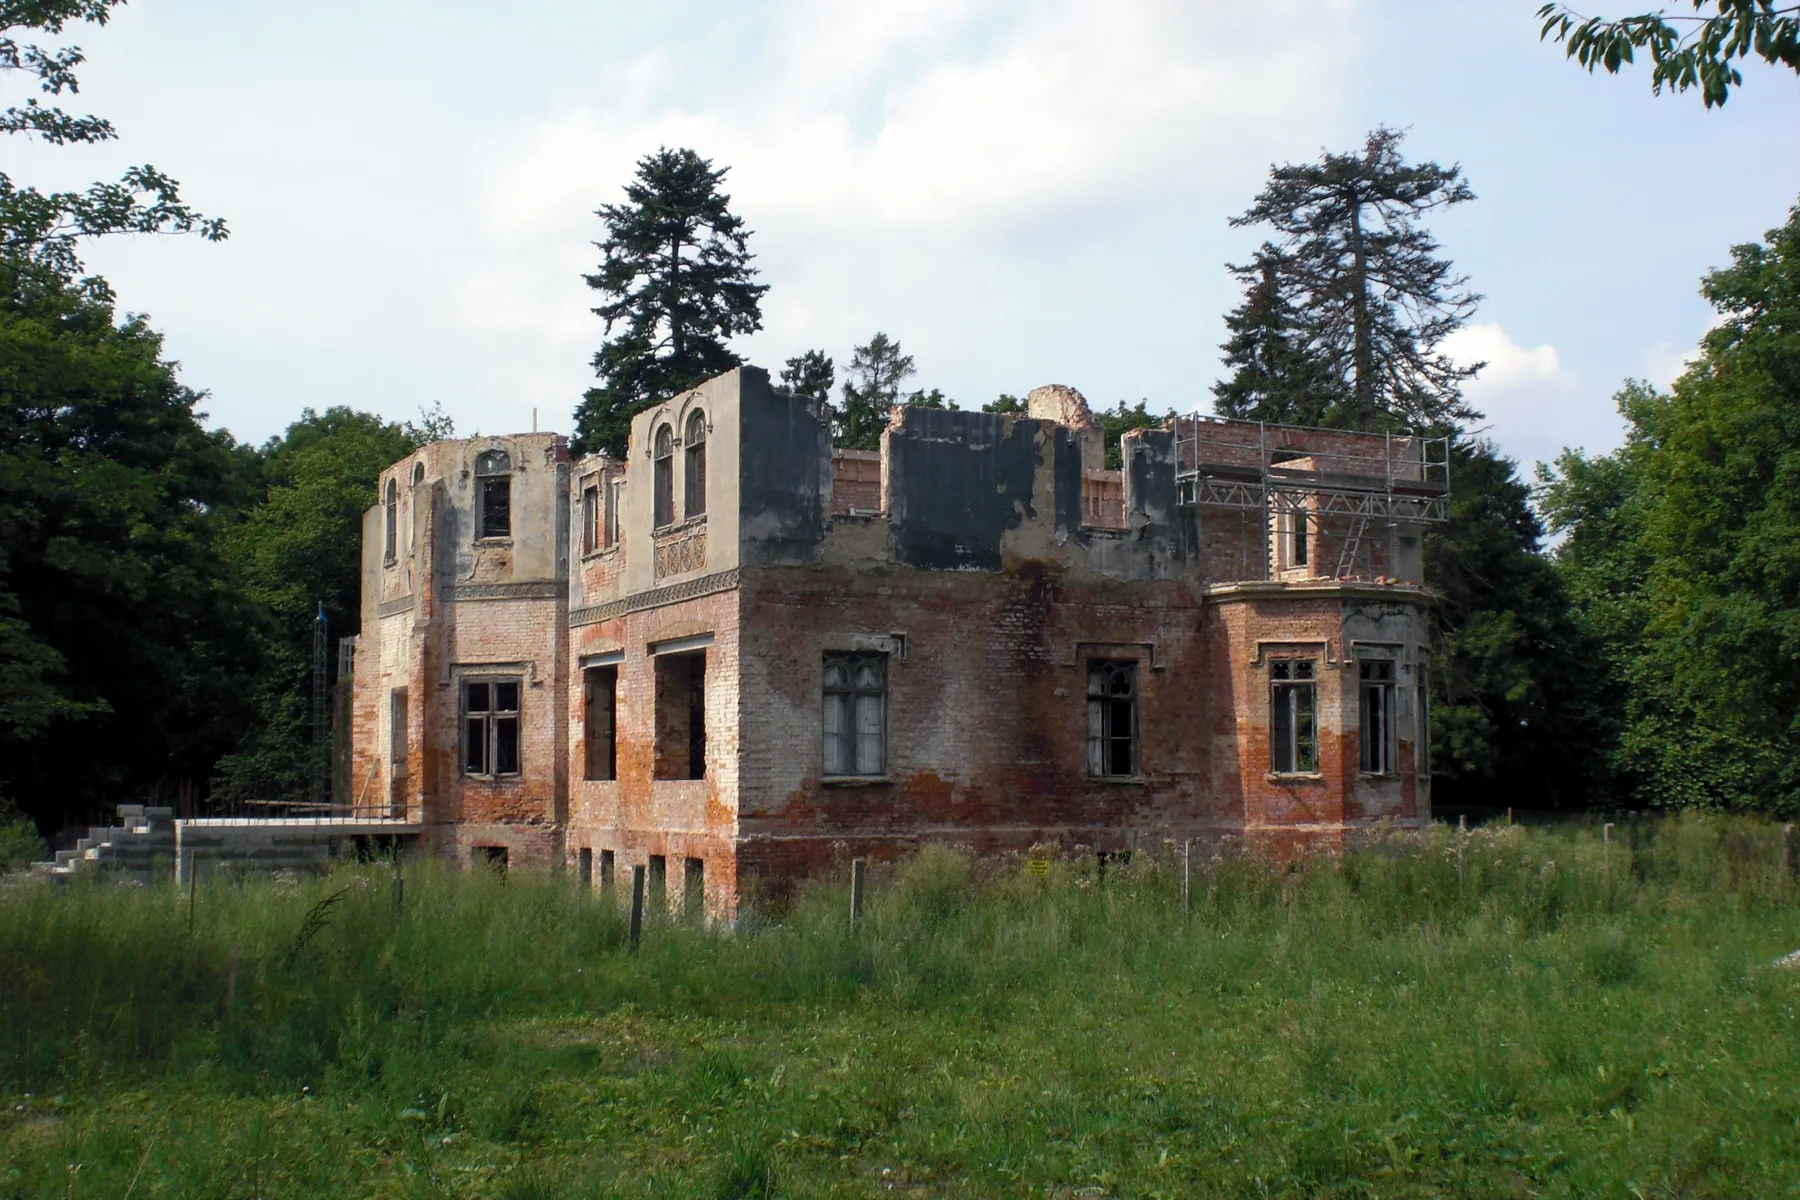 Photo showing: (Neues) Herrenhaus Schwiessel (Mecklenburg-Vorpommern) - Ruine
Datum: 13.08.2010
Urheber: onnola (Flickr-User)
Quelle: https://www.flickr.com/photos/30845644@N04/5982142580/